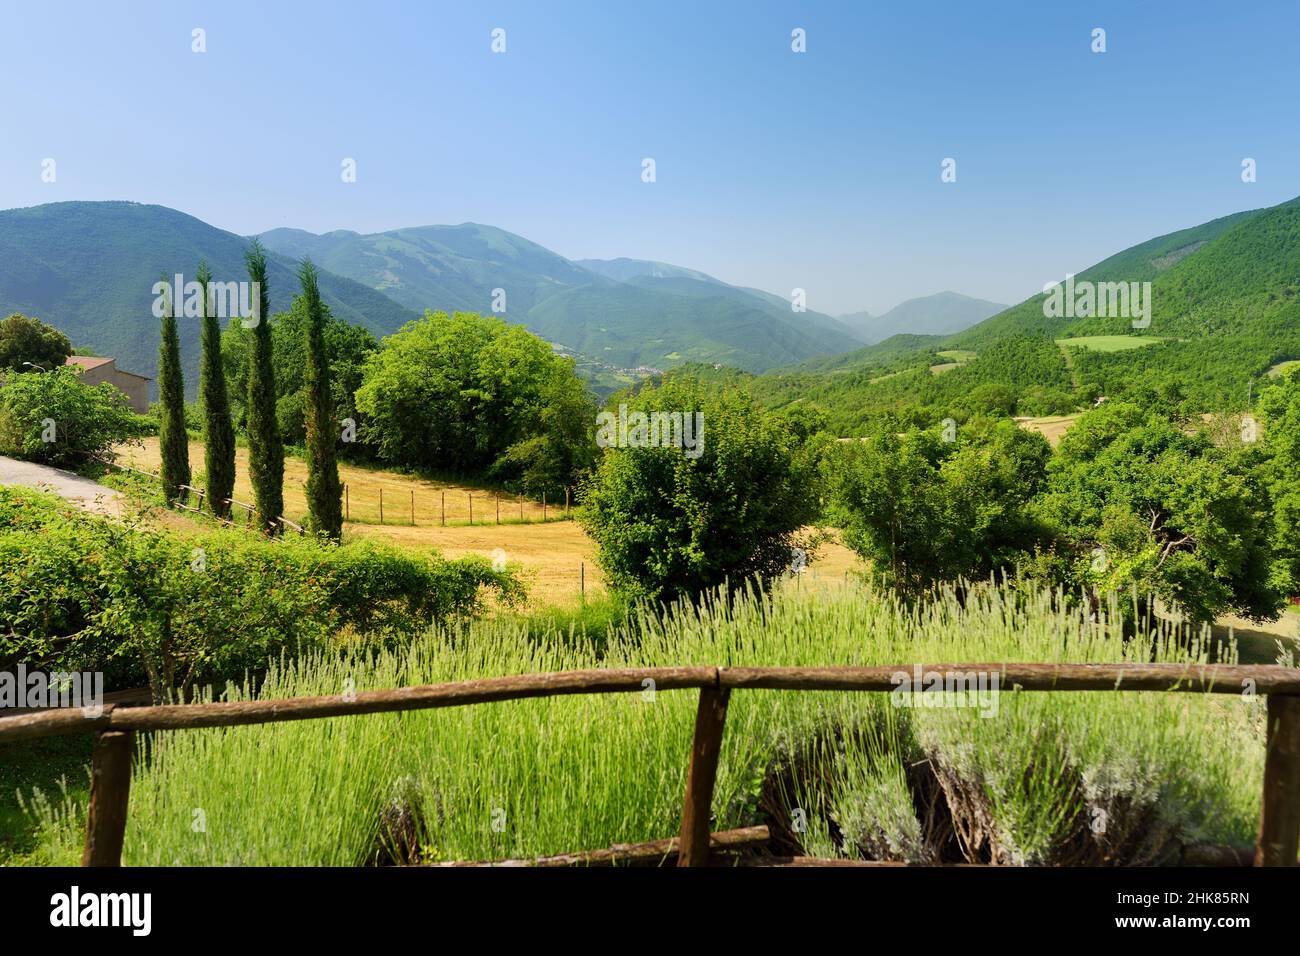 Sibylline Mountains, eine der größten Berggruppen der italischen Halbinsel, vom Dorf Meggiano aus gesehen. Nationalpark Monti Sibillini, Umbrien, Italien. Stockfoto